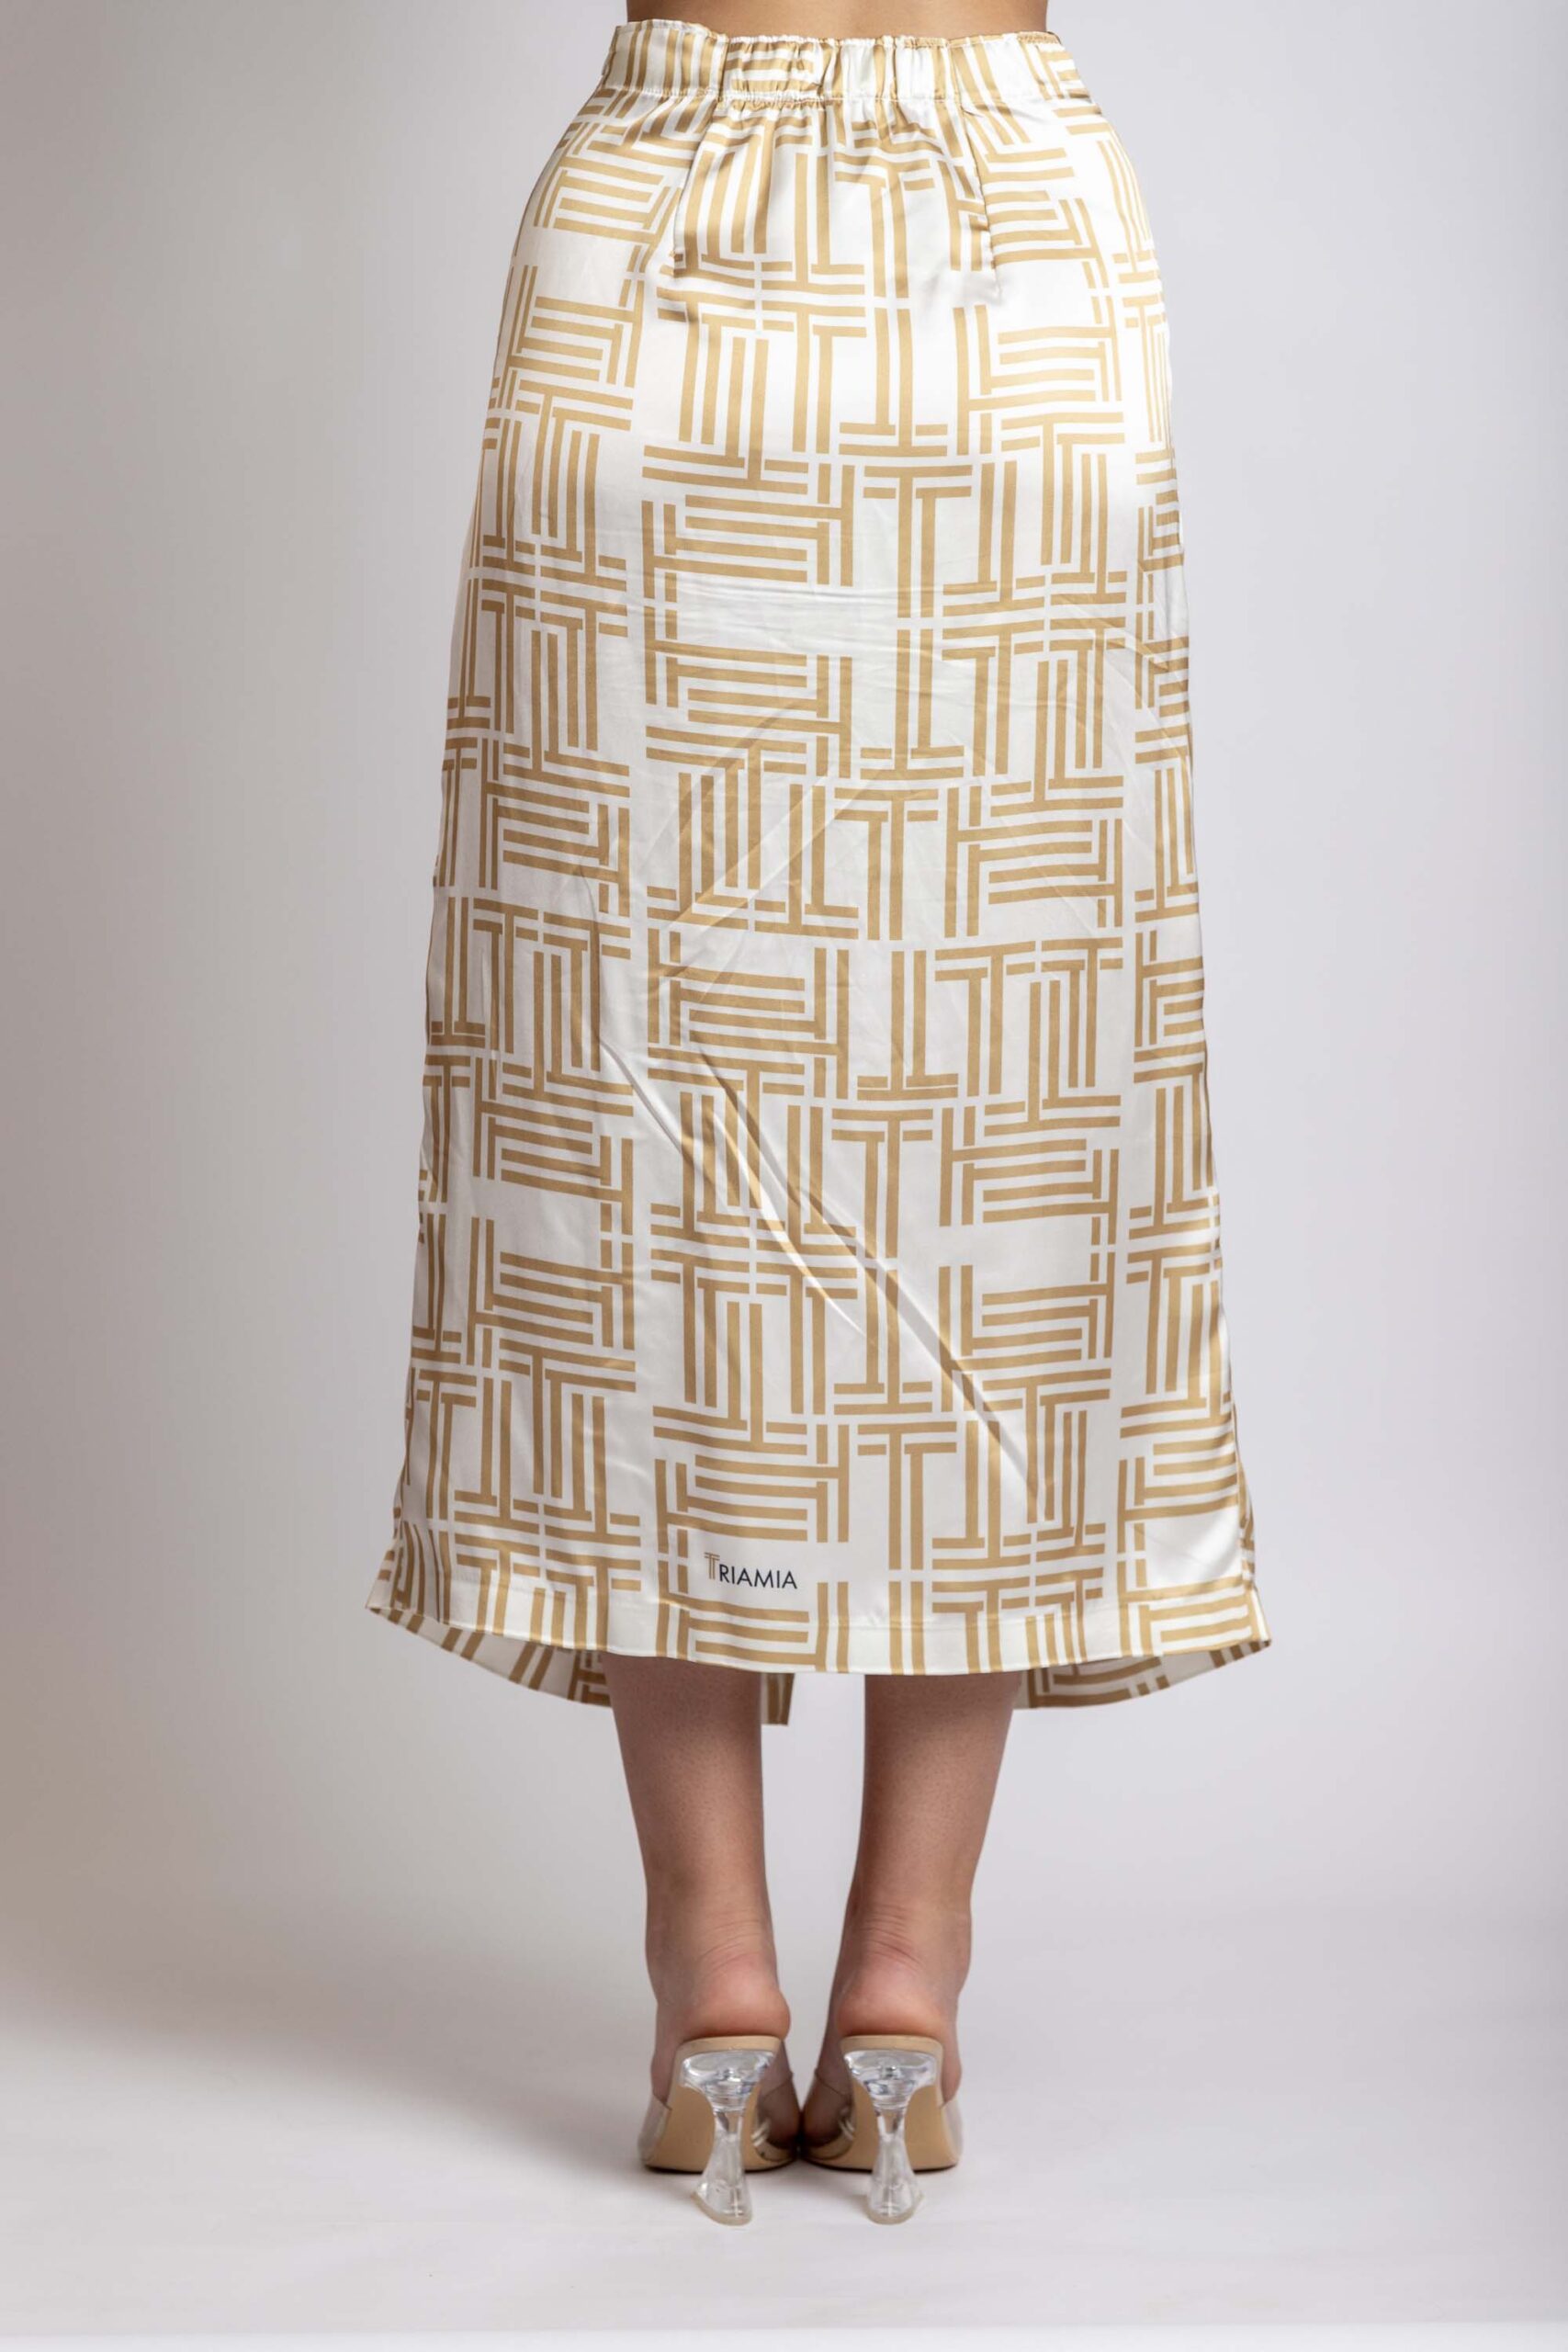 Midi Skirt with triamia logo print, back.